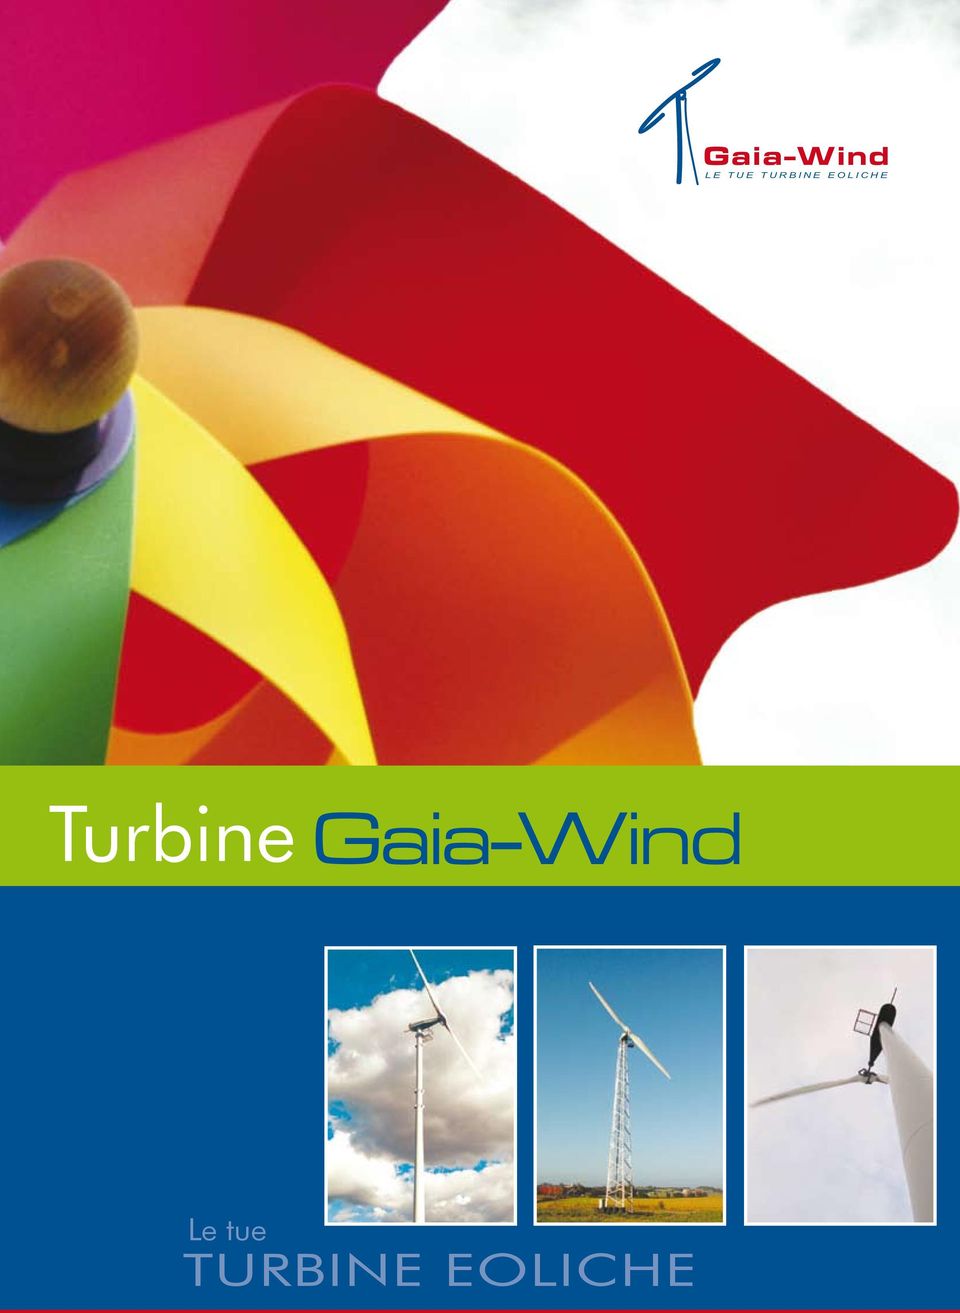 Turbine Gaia-Wind